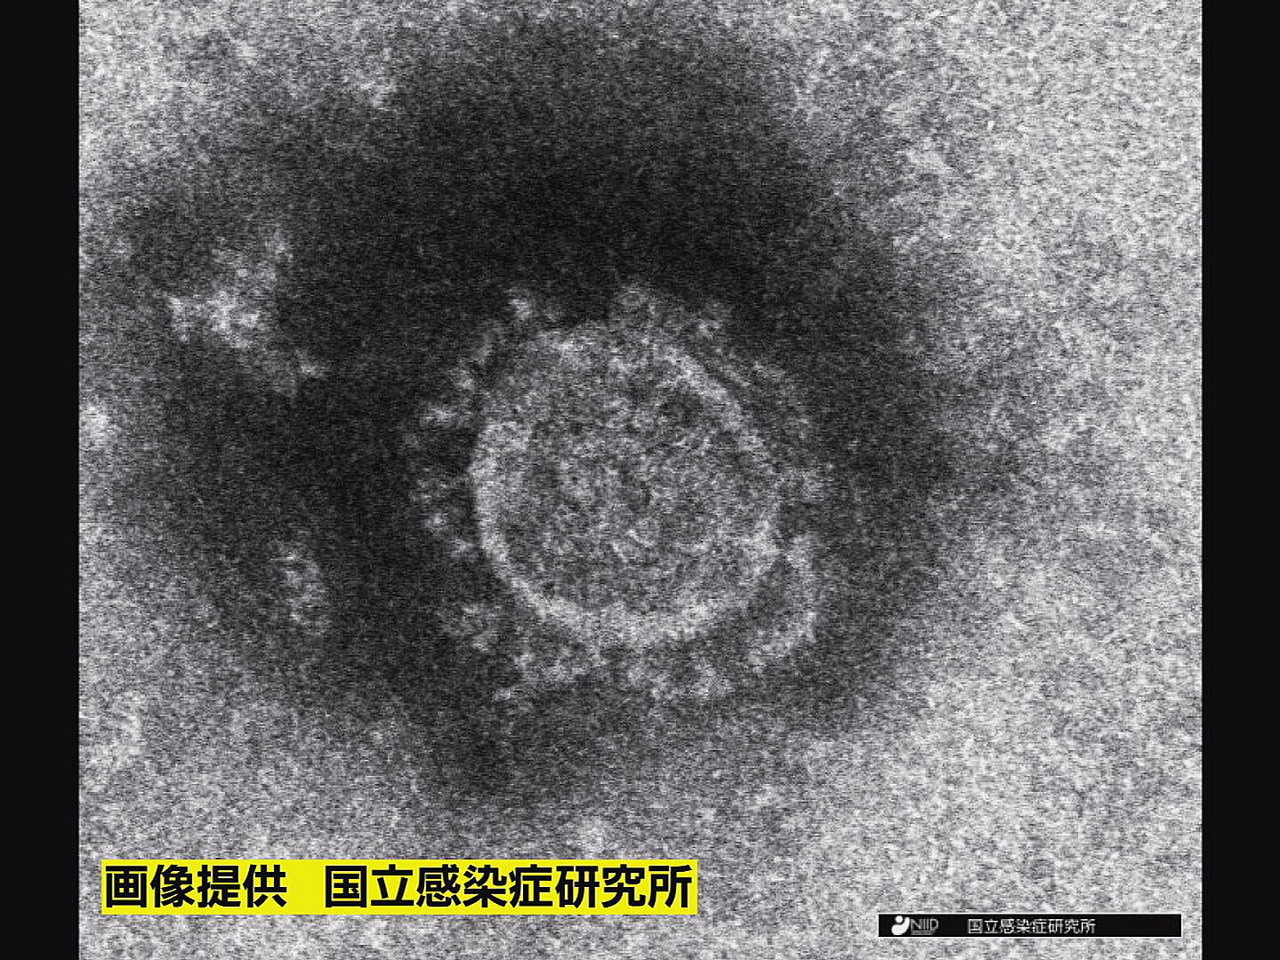 岐阜県は２３日、新型コロナウイルスの新規感染者が ３２６人確認されたと発表しまし...